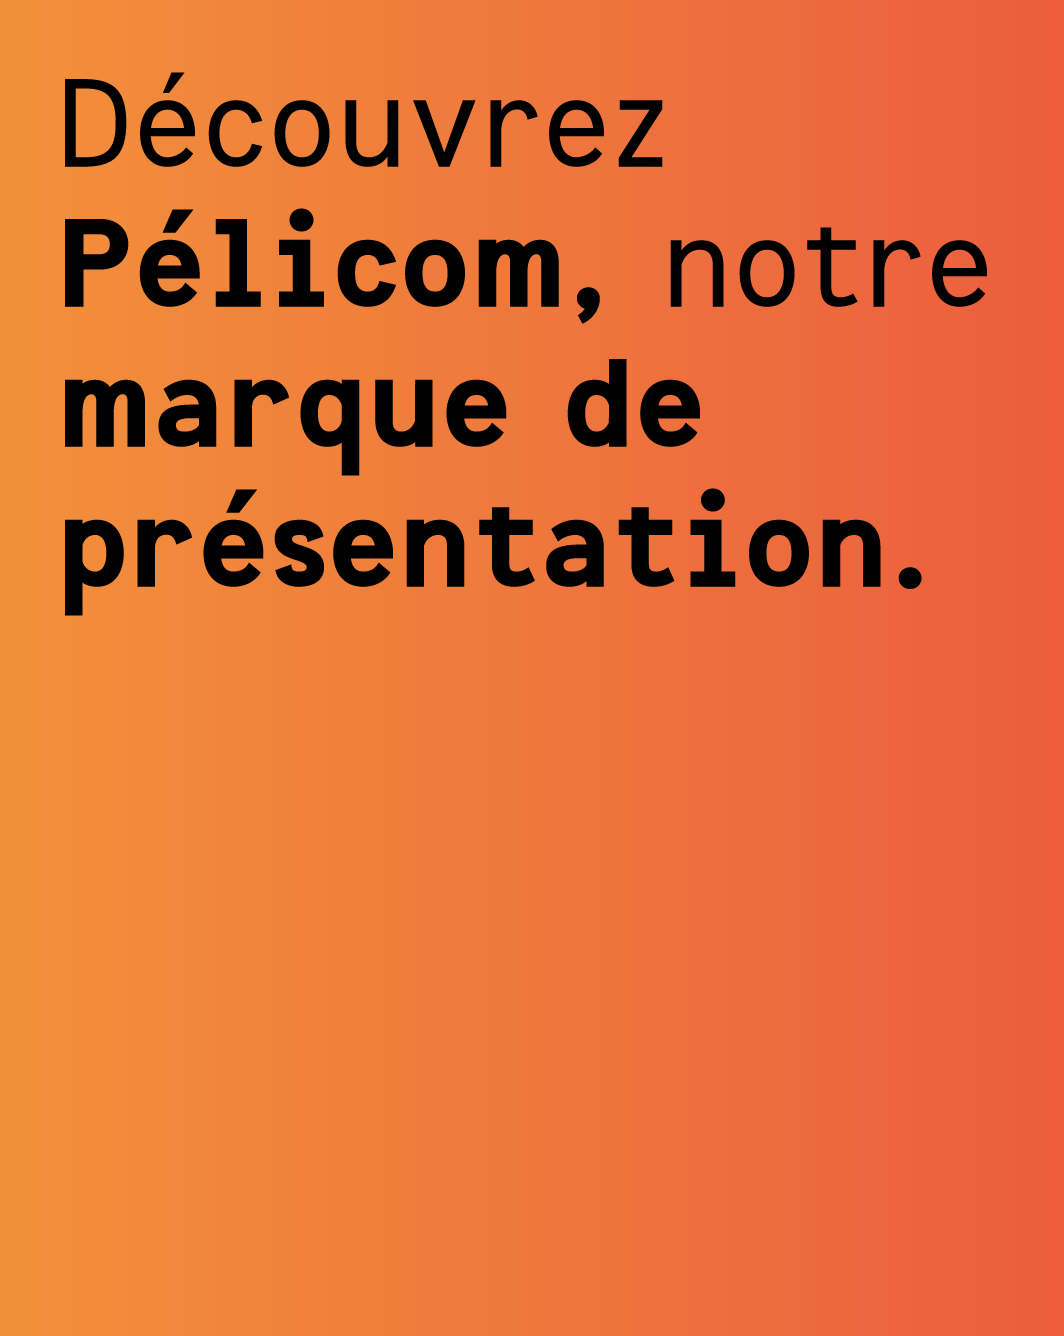 Maison Léon - Pelicom' - Découvrez Pélicom, notre marque de présentation